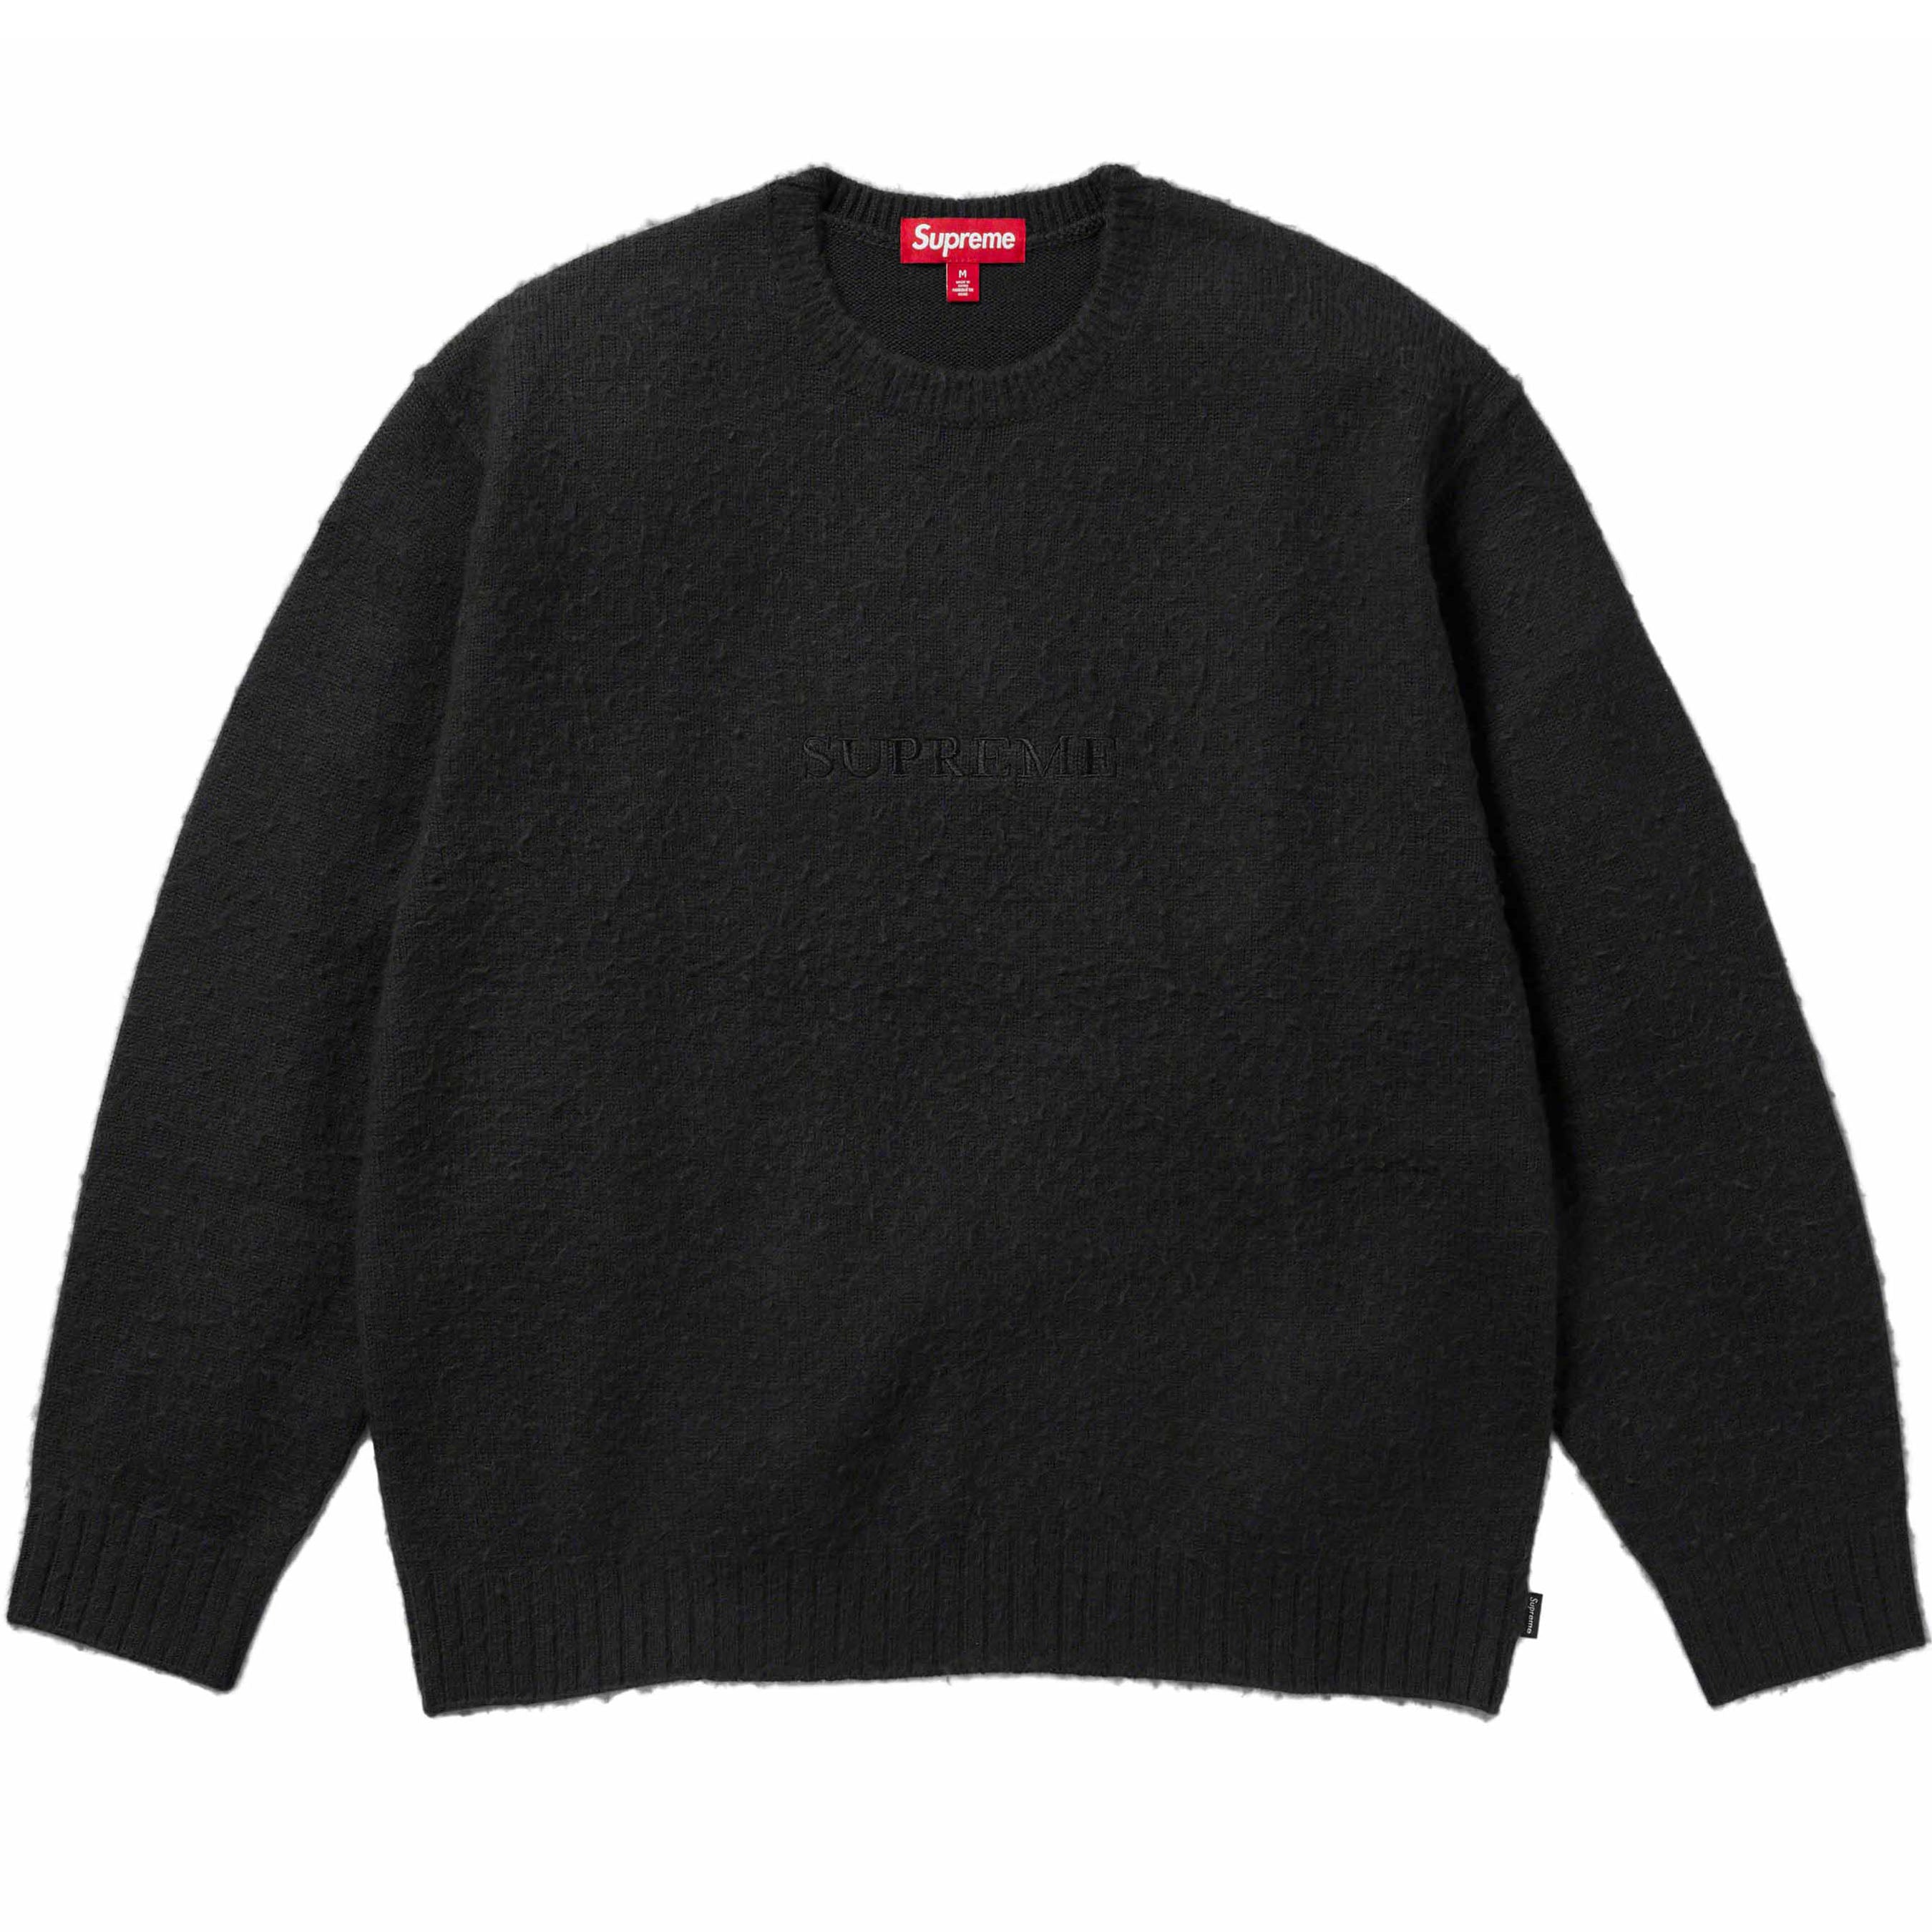 雑誌で紹介された Supreme Supreme supreme Pilled Sweater Sweater